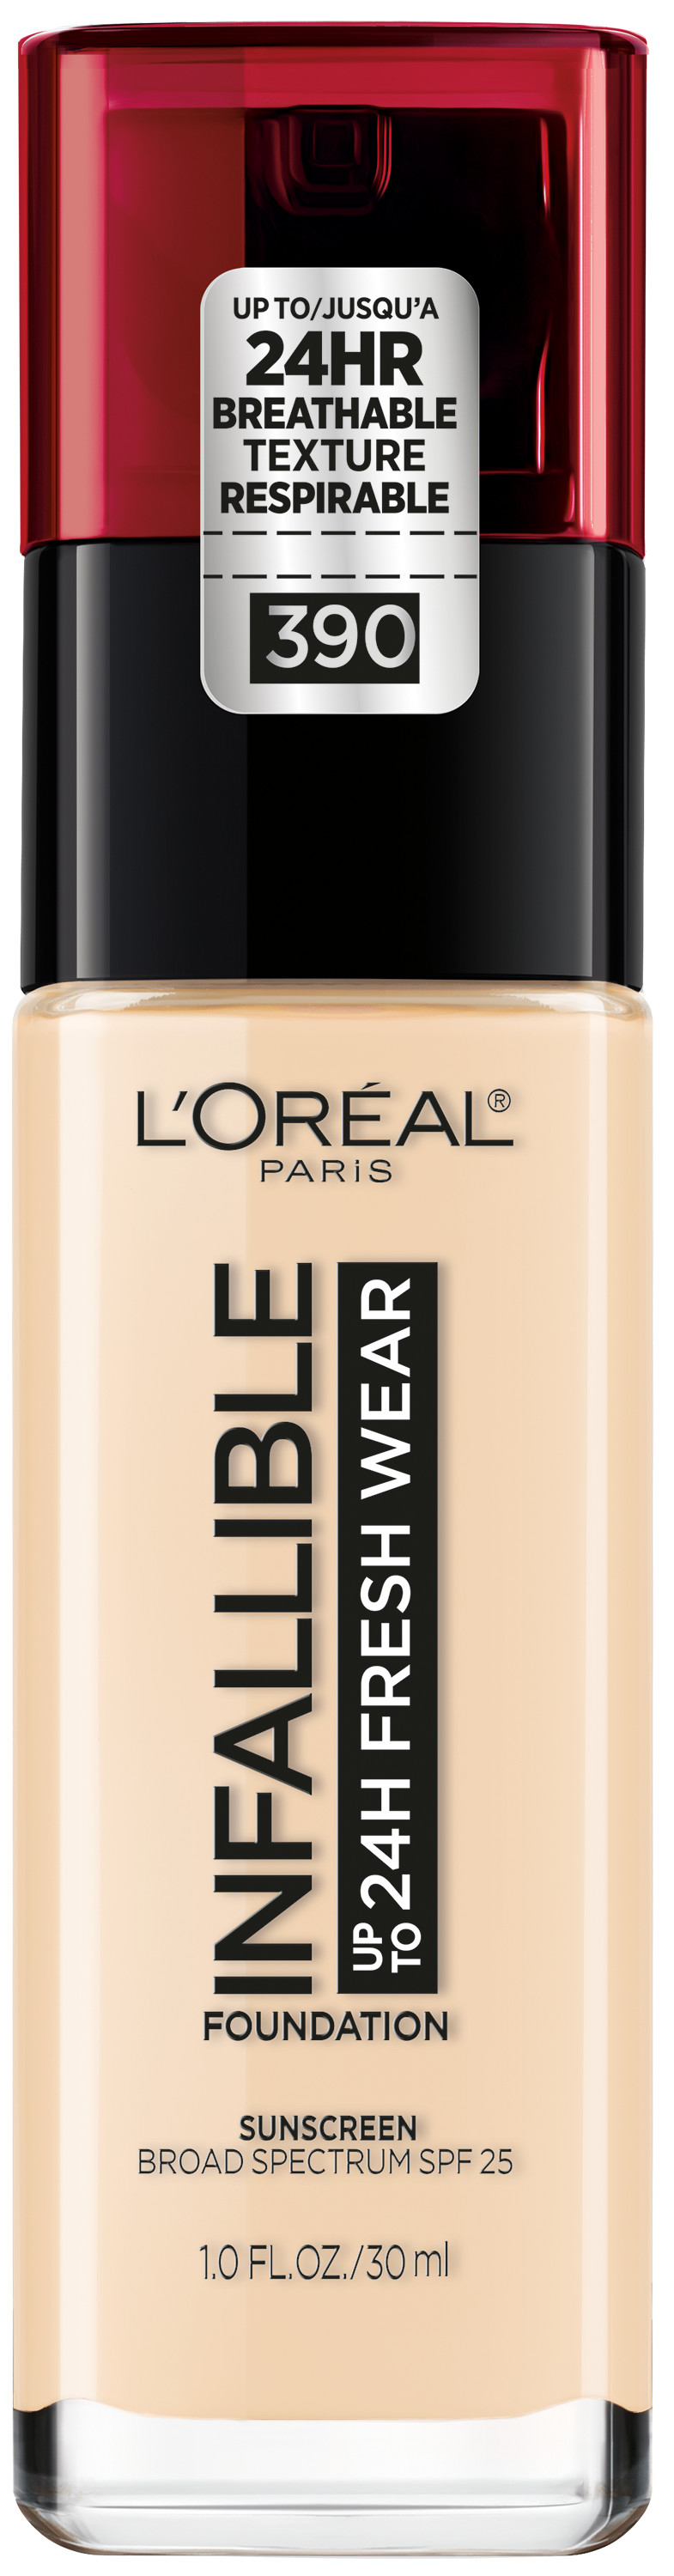 L'Oreal Paris Infallible Fresh Wear 24 Hr Liquid Foundation Makeup, 390 Snow, 1 fl oz - image 1 of 10